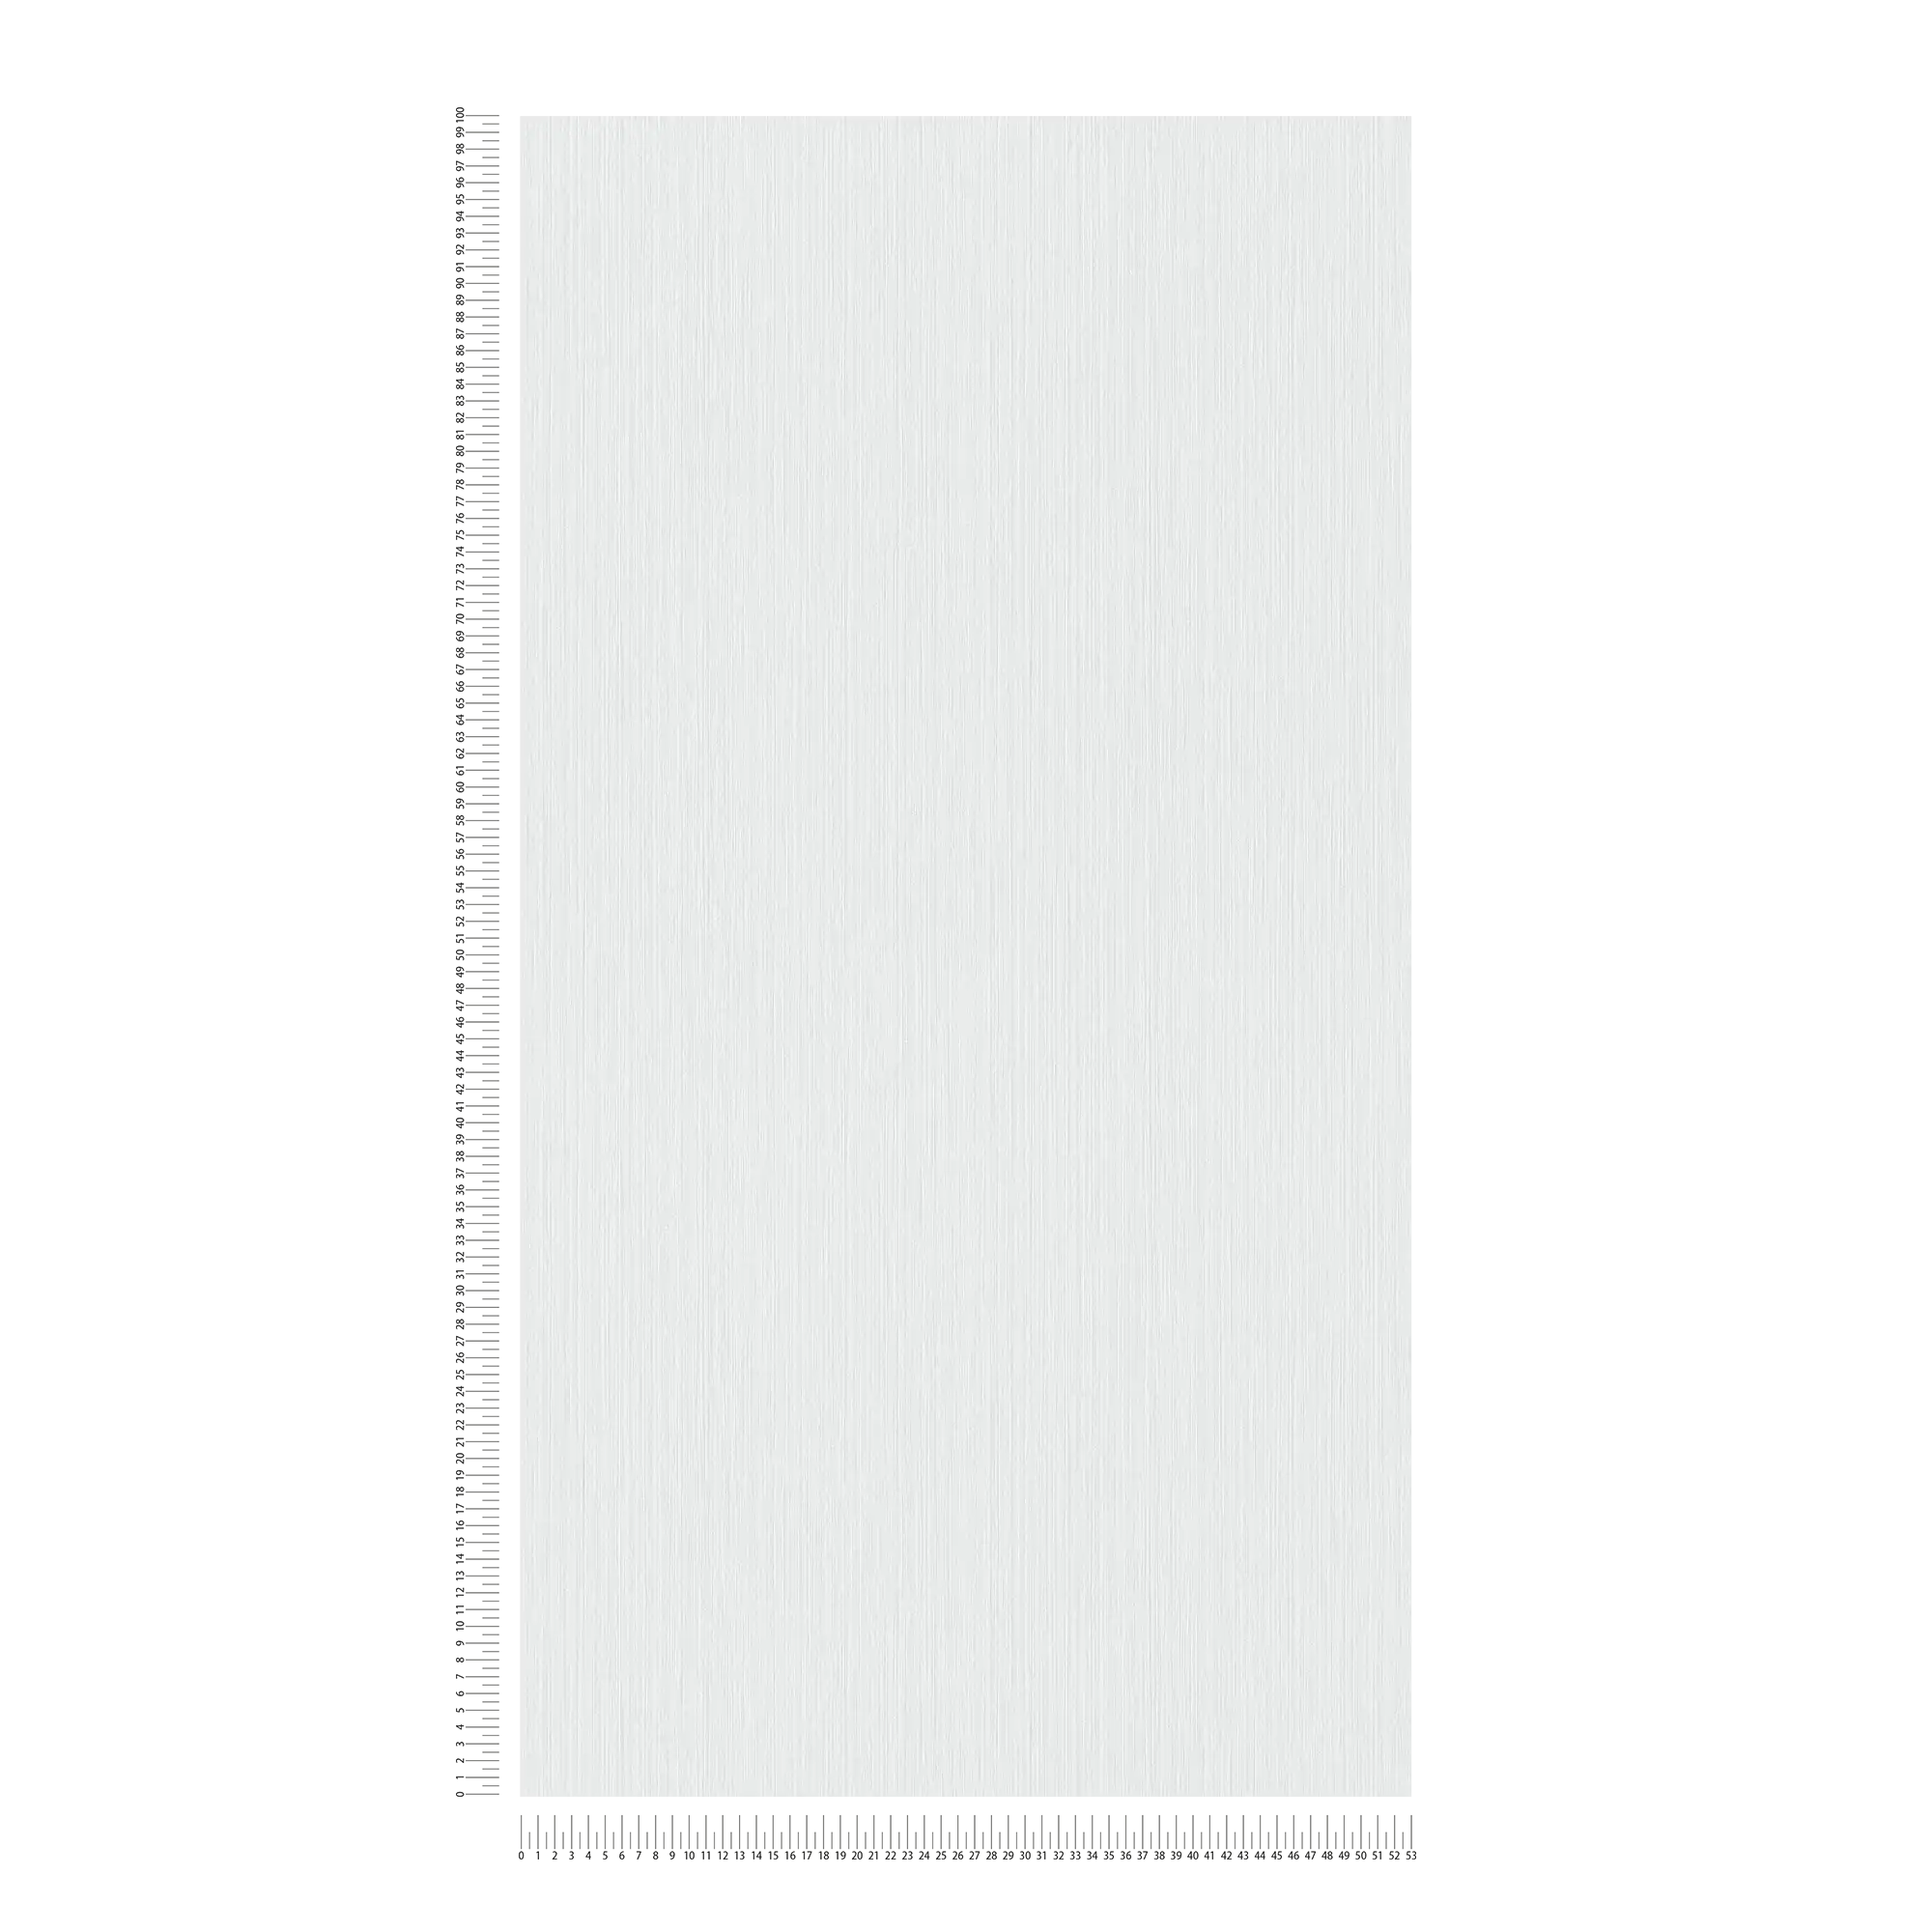             Papier peint uni gris clair avec effet textile chiné de MICHALSKY
        